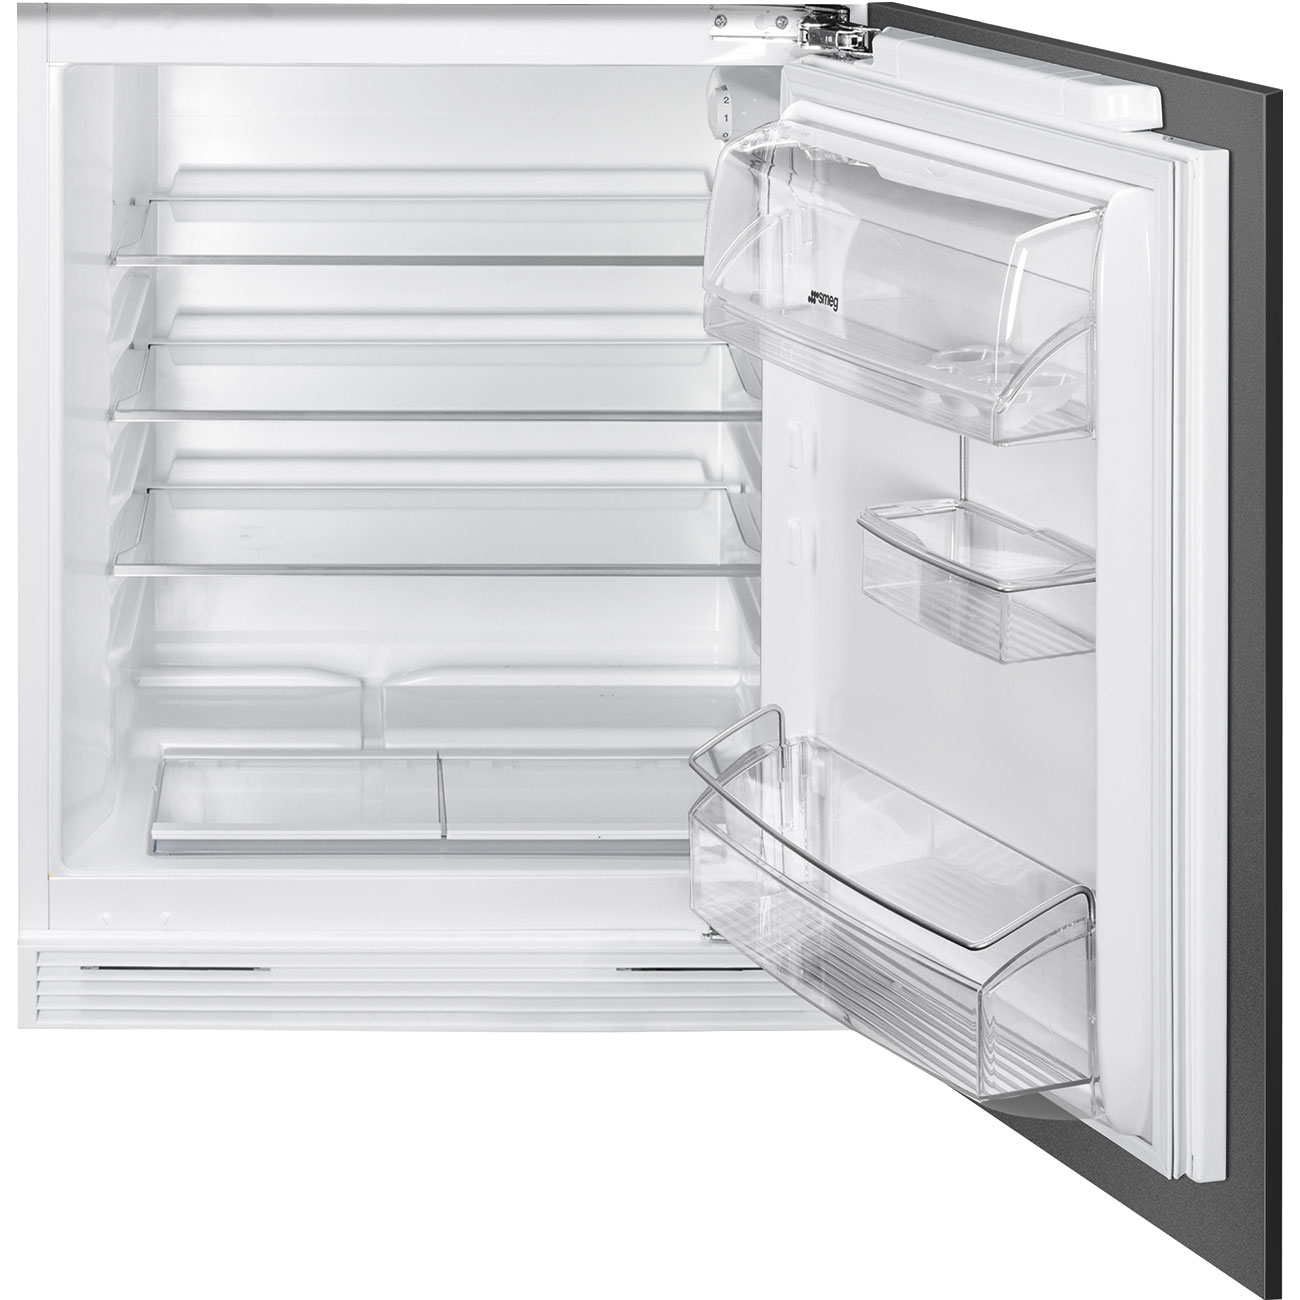 Встраиваемый холодильник Smeg U8L080DF белый встраиваемый однокамерный холодильник smeg u8l080df